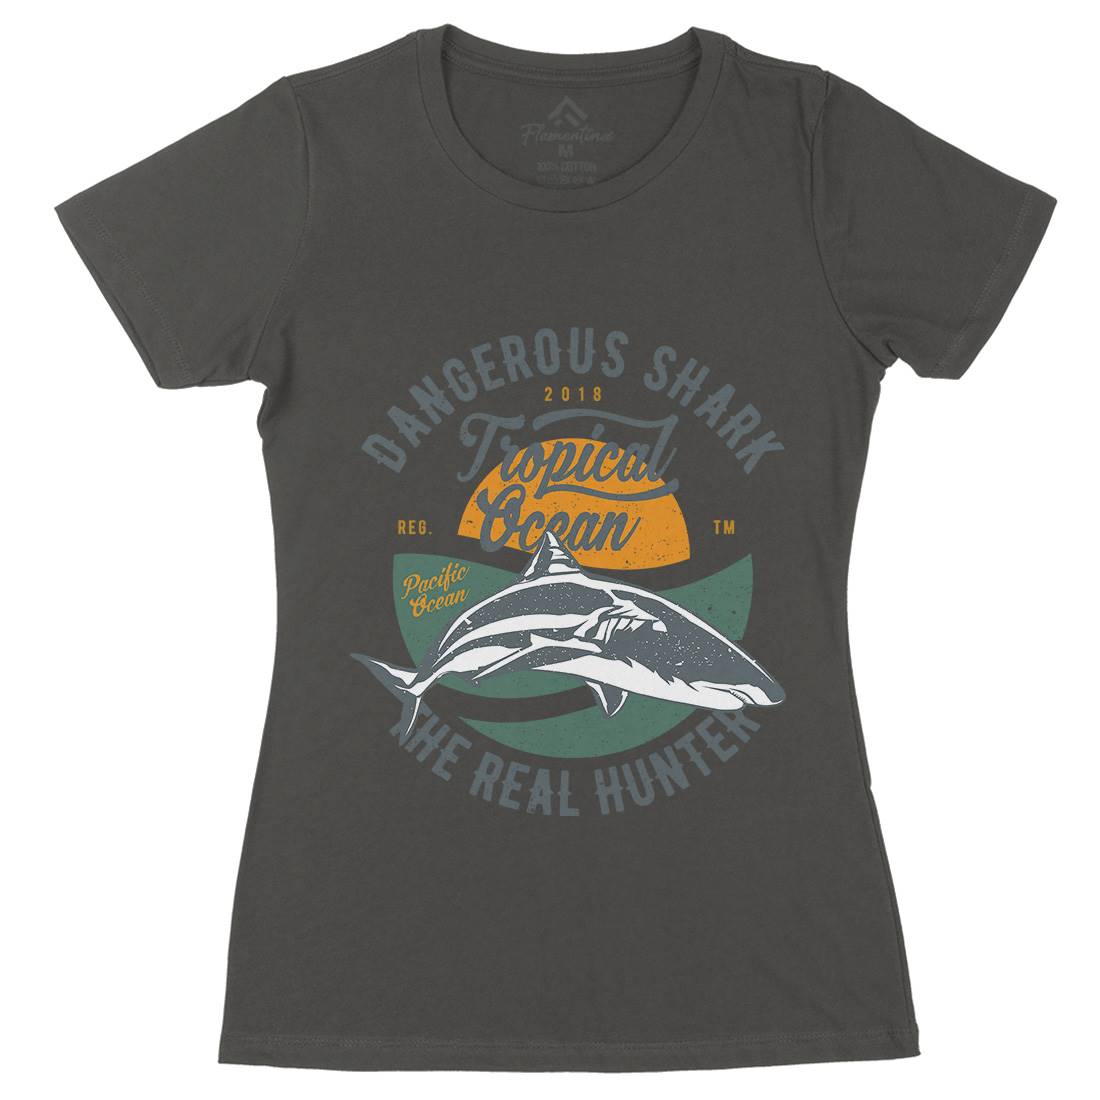 Dangerous Shark Womens Organic Crew Neck T-Shirt Navy A643